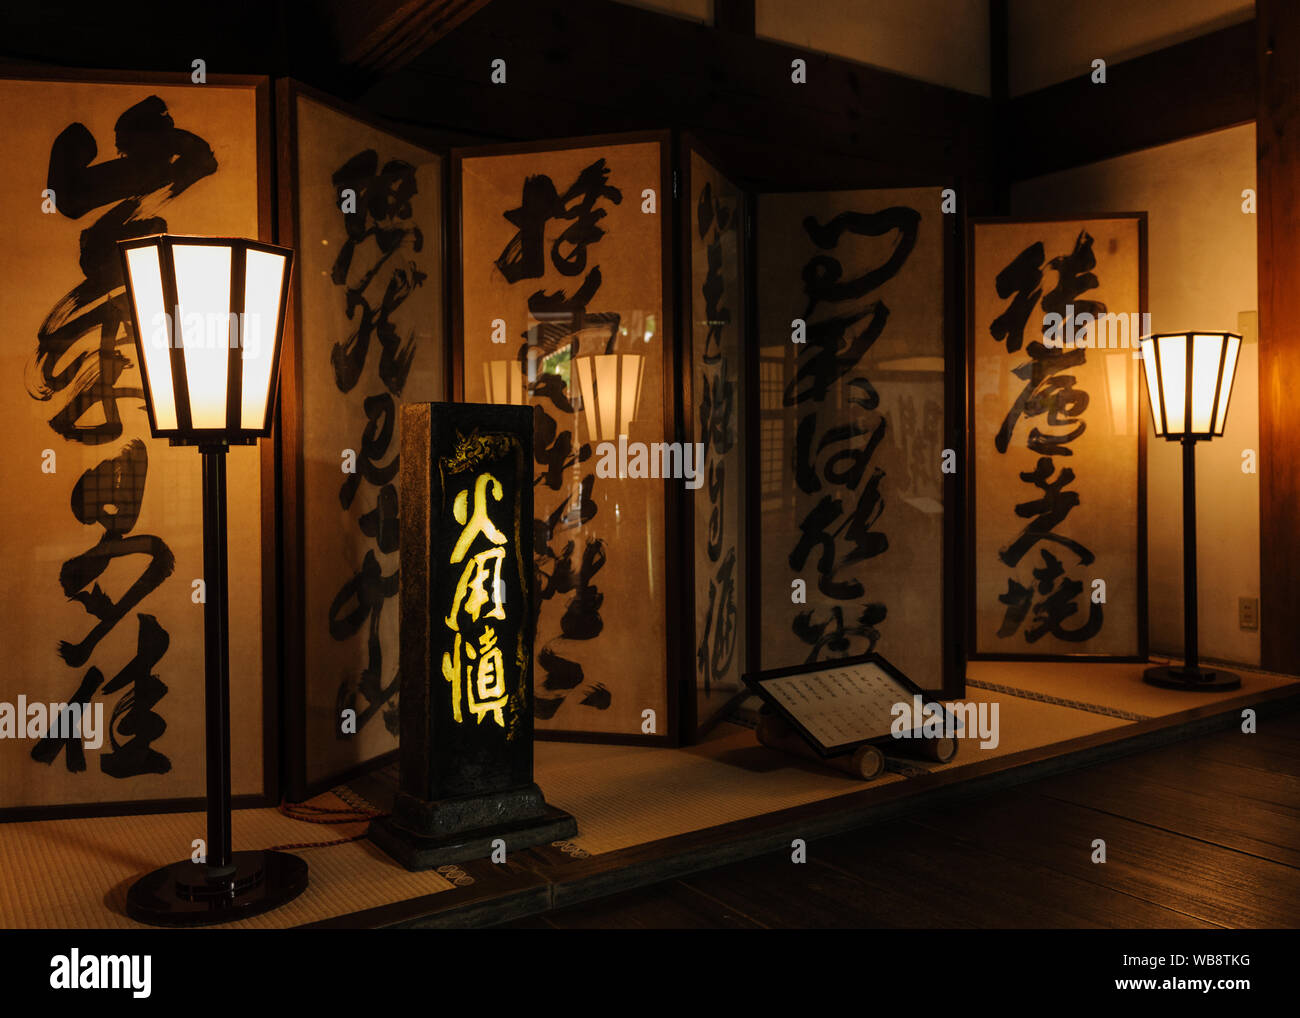 Impressionante la calligrafia con scritto a mano in caratteri Kanji Ryoan-ji il tempio di Kyoto, Giappone Foto Stock